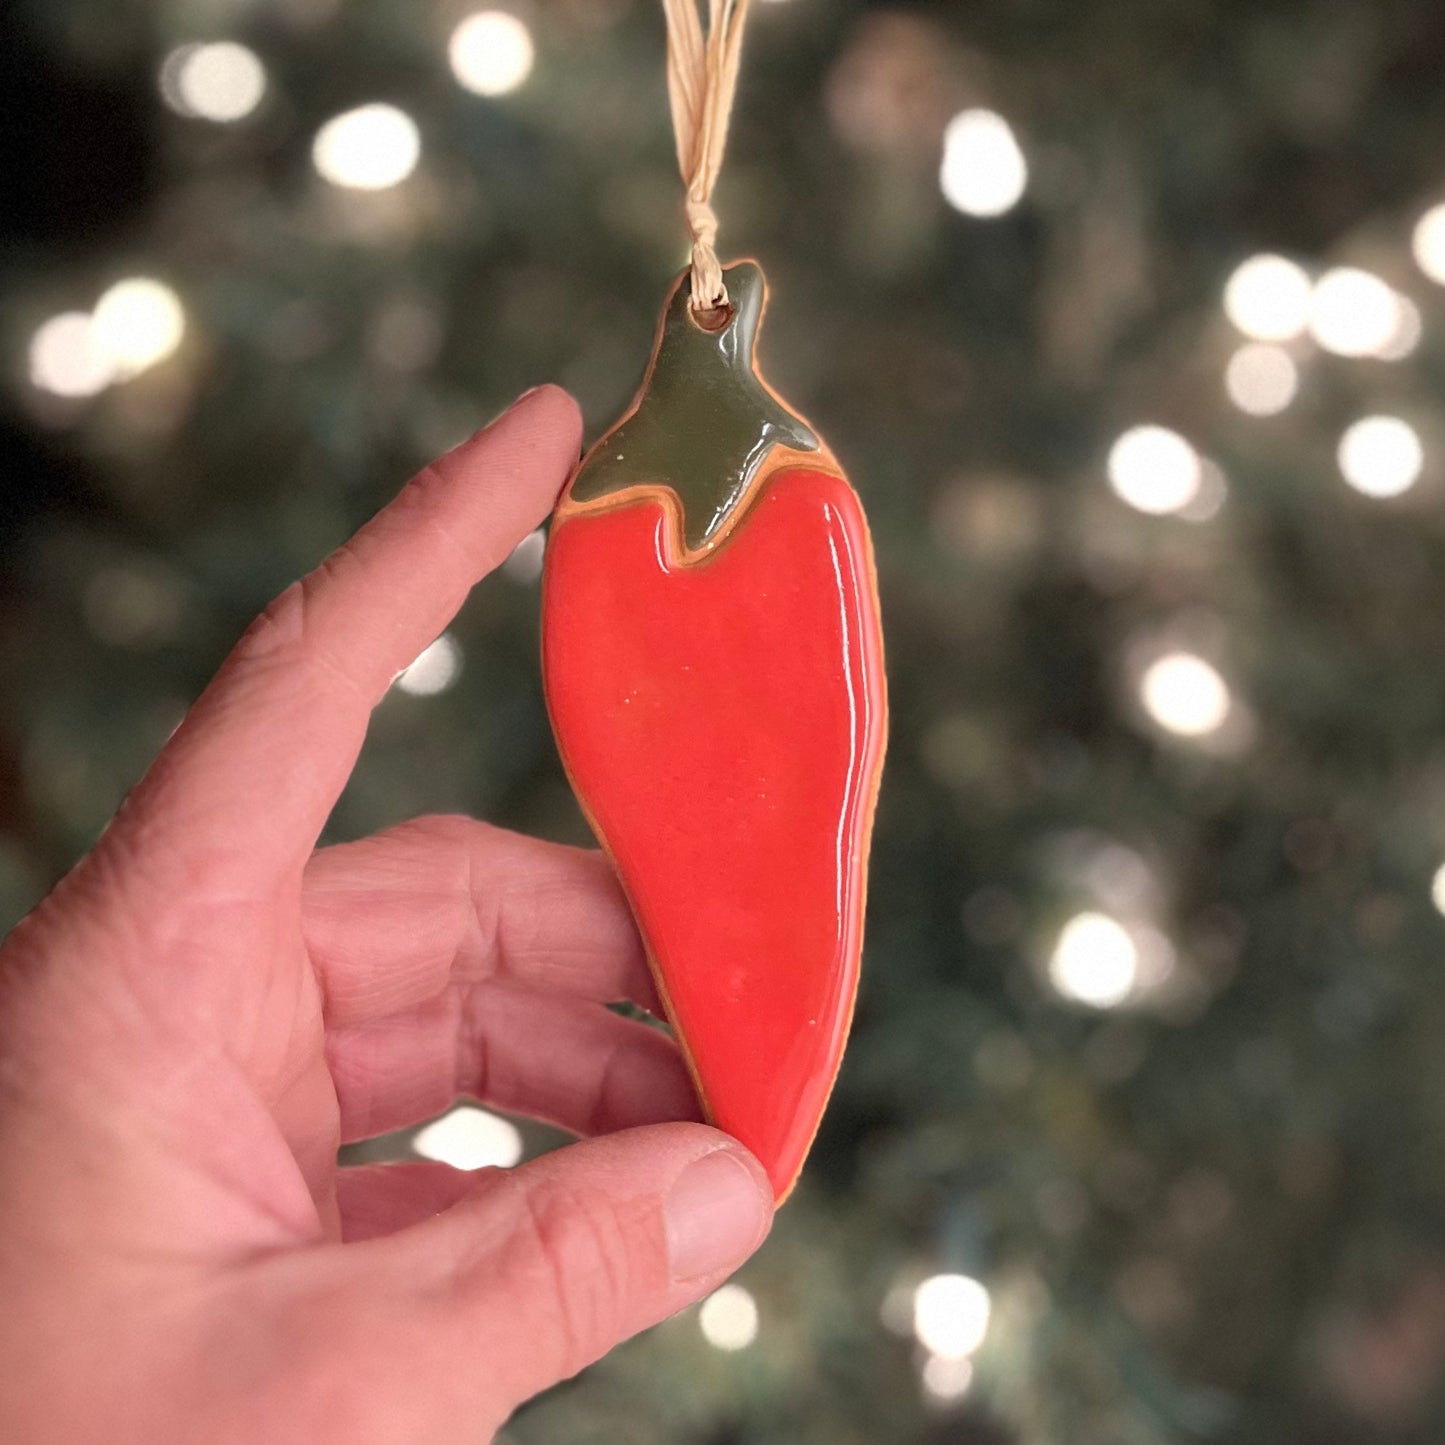 Chili Pepper Ornament Gift Set of 3